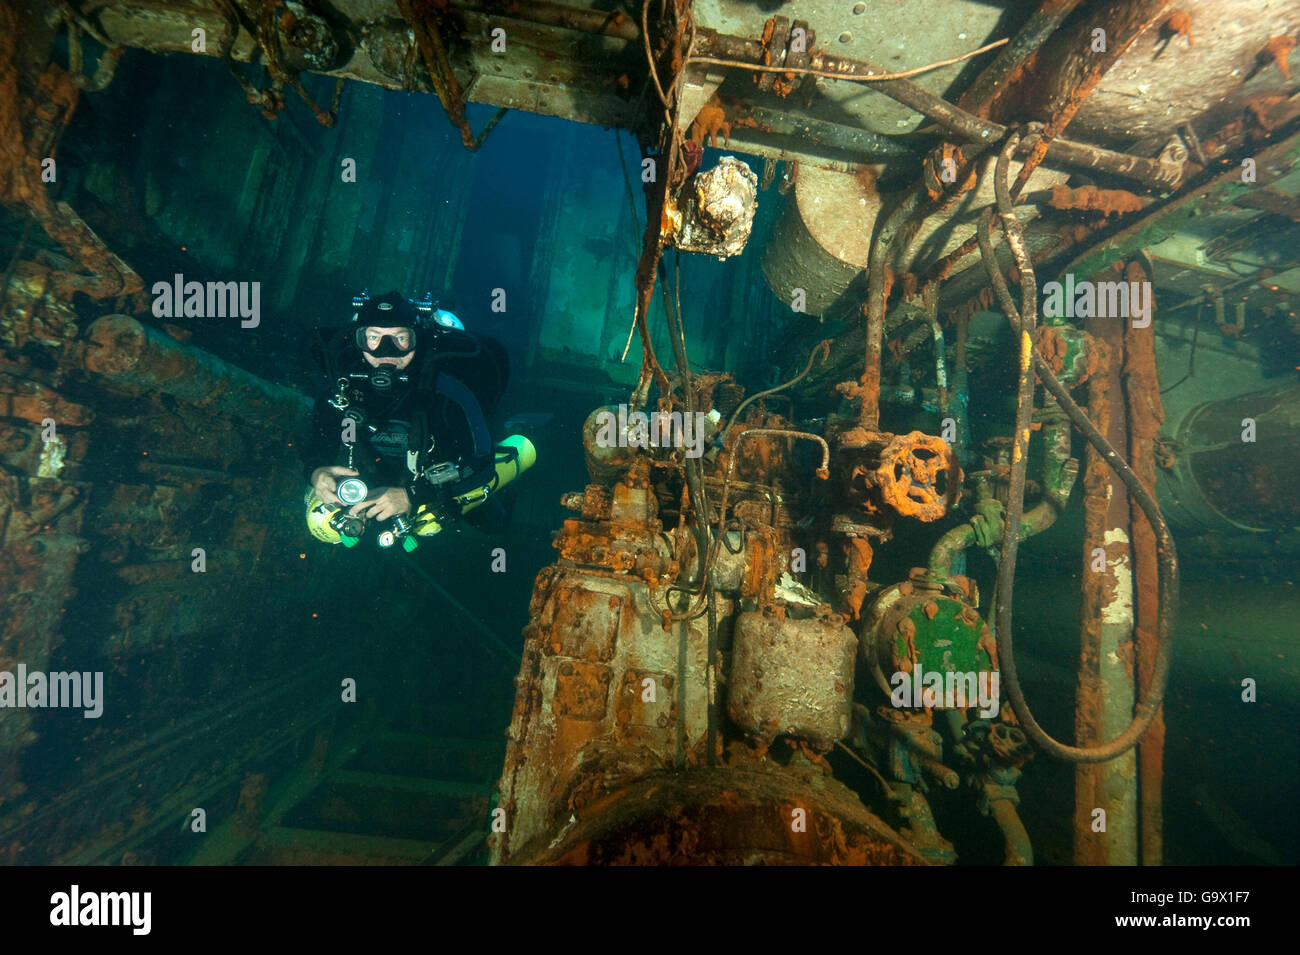 Dans Tech-Diver wreck, Moteur Diesel prix, plongée technique, plongée tech, tech-plongée sous-marine, Nitrox, trimix, l'héliox, Gozo, Malte, Europe, Méditerranée Banque D'Images